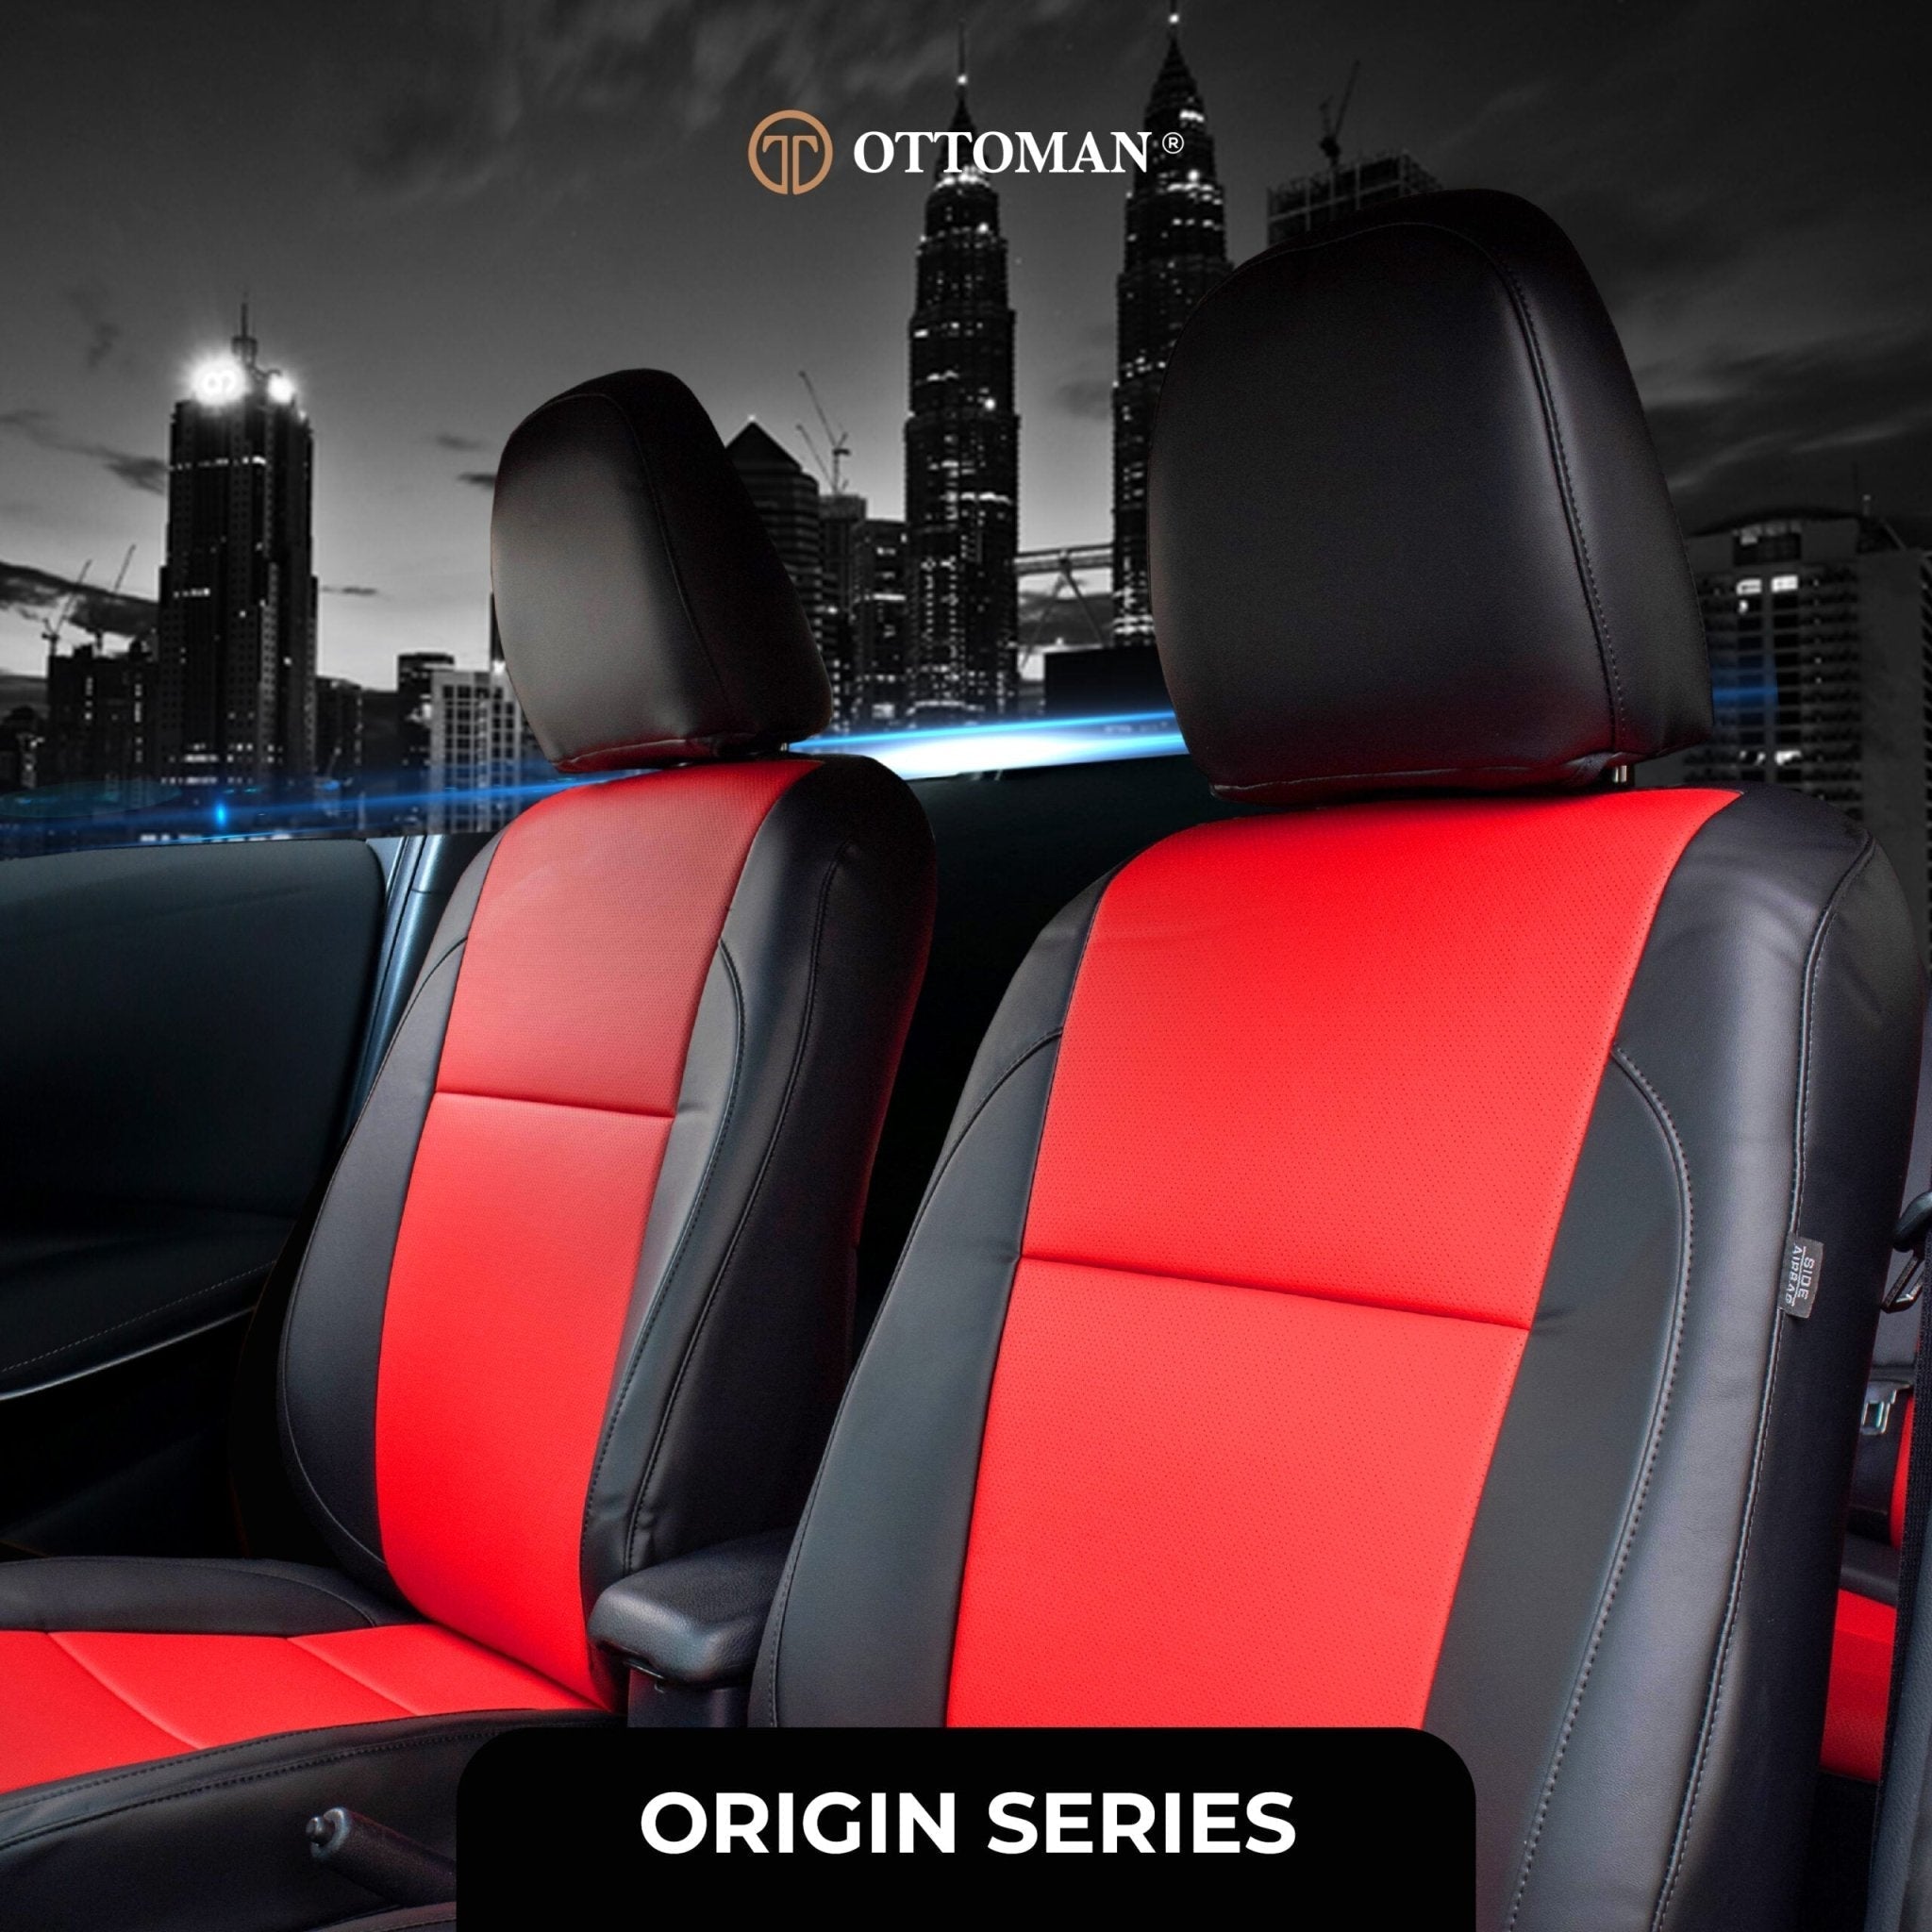 Proton Satria Neo (2006-2015) Ottoman Seat Cover Seat Cover in Klang Selangor, Penang, Johor Bahru - Ottoman Car Mats